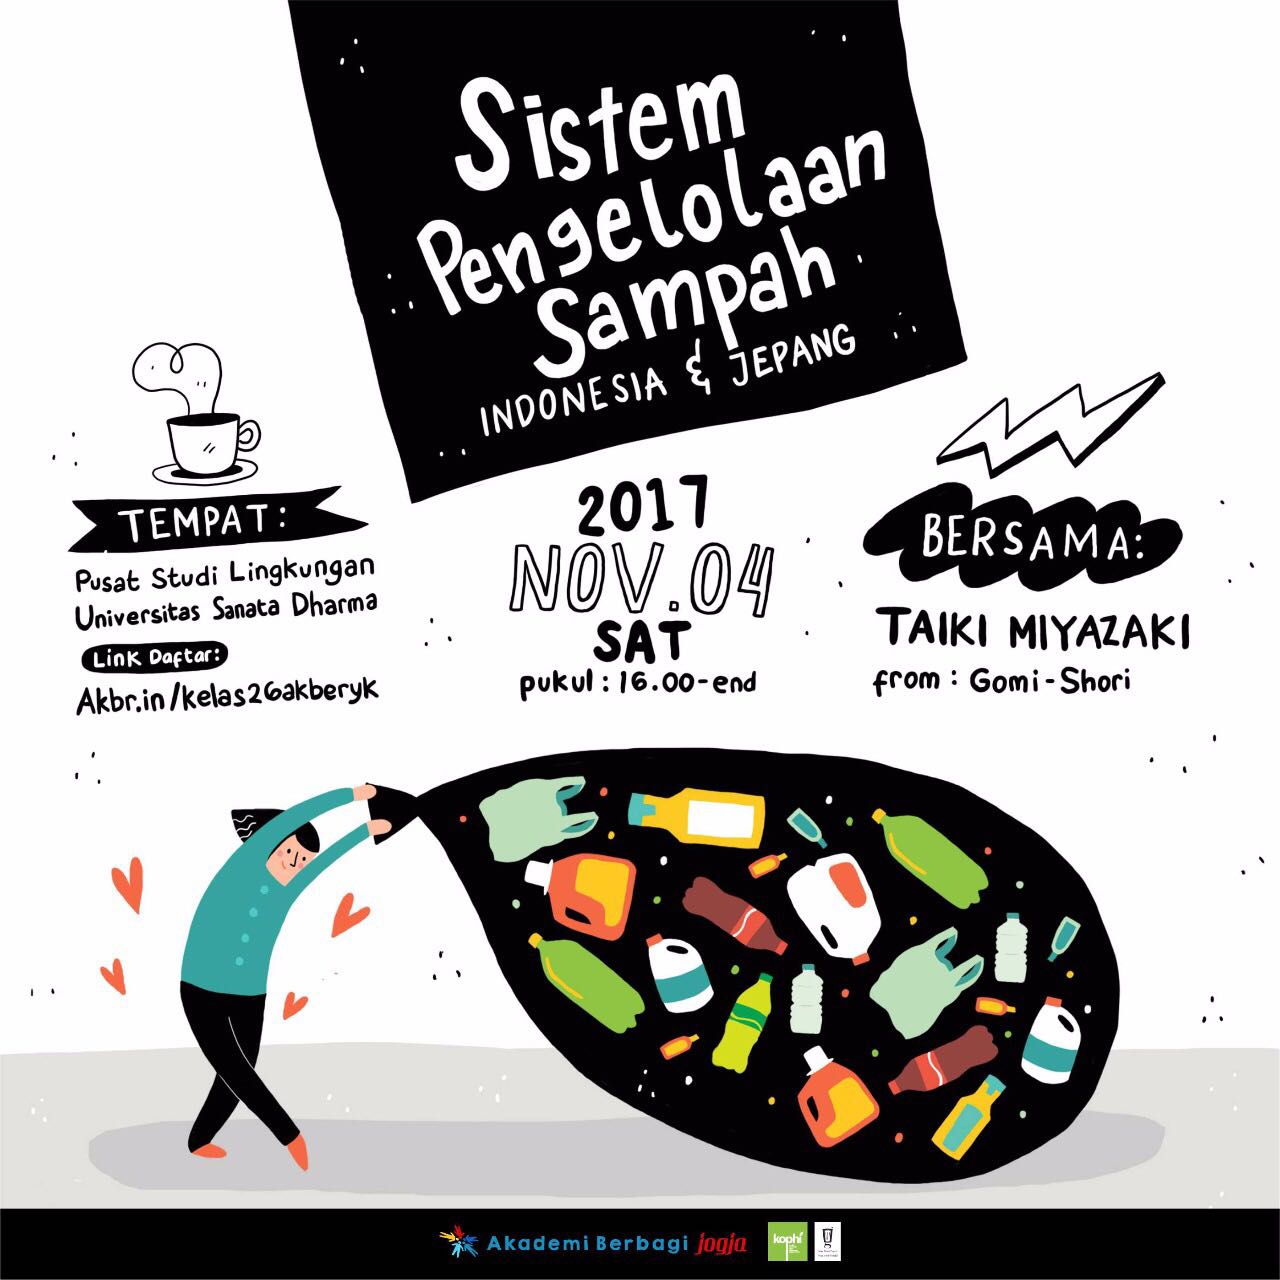 Jogja: Sistem Pengelolaan Sampah Indonesia & Jepang 